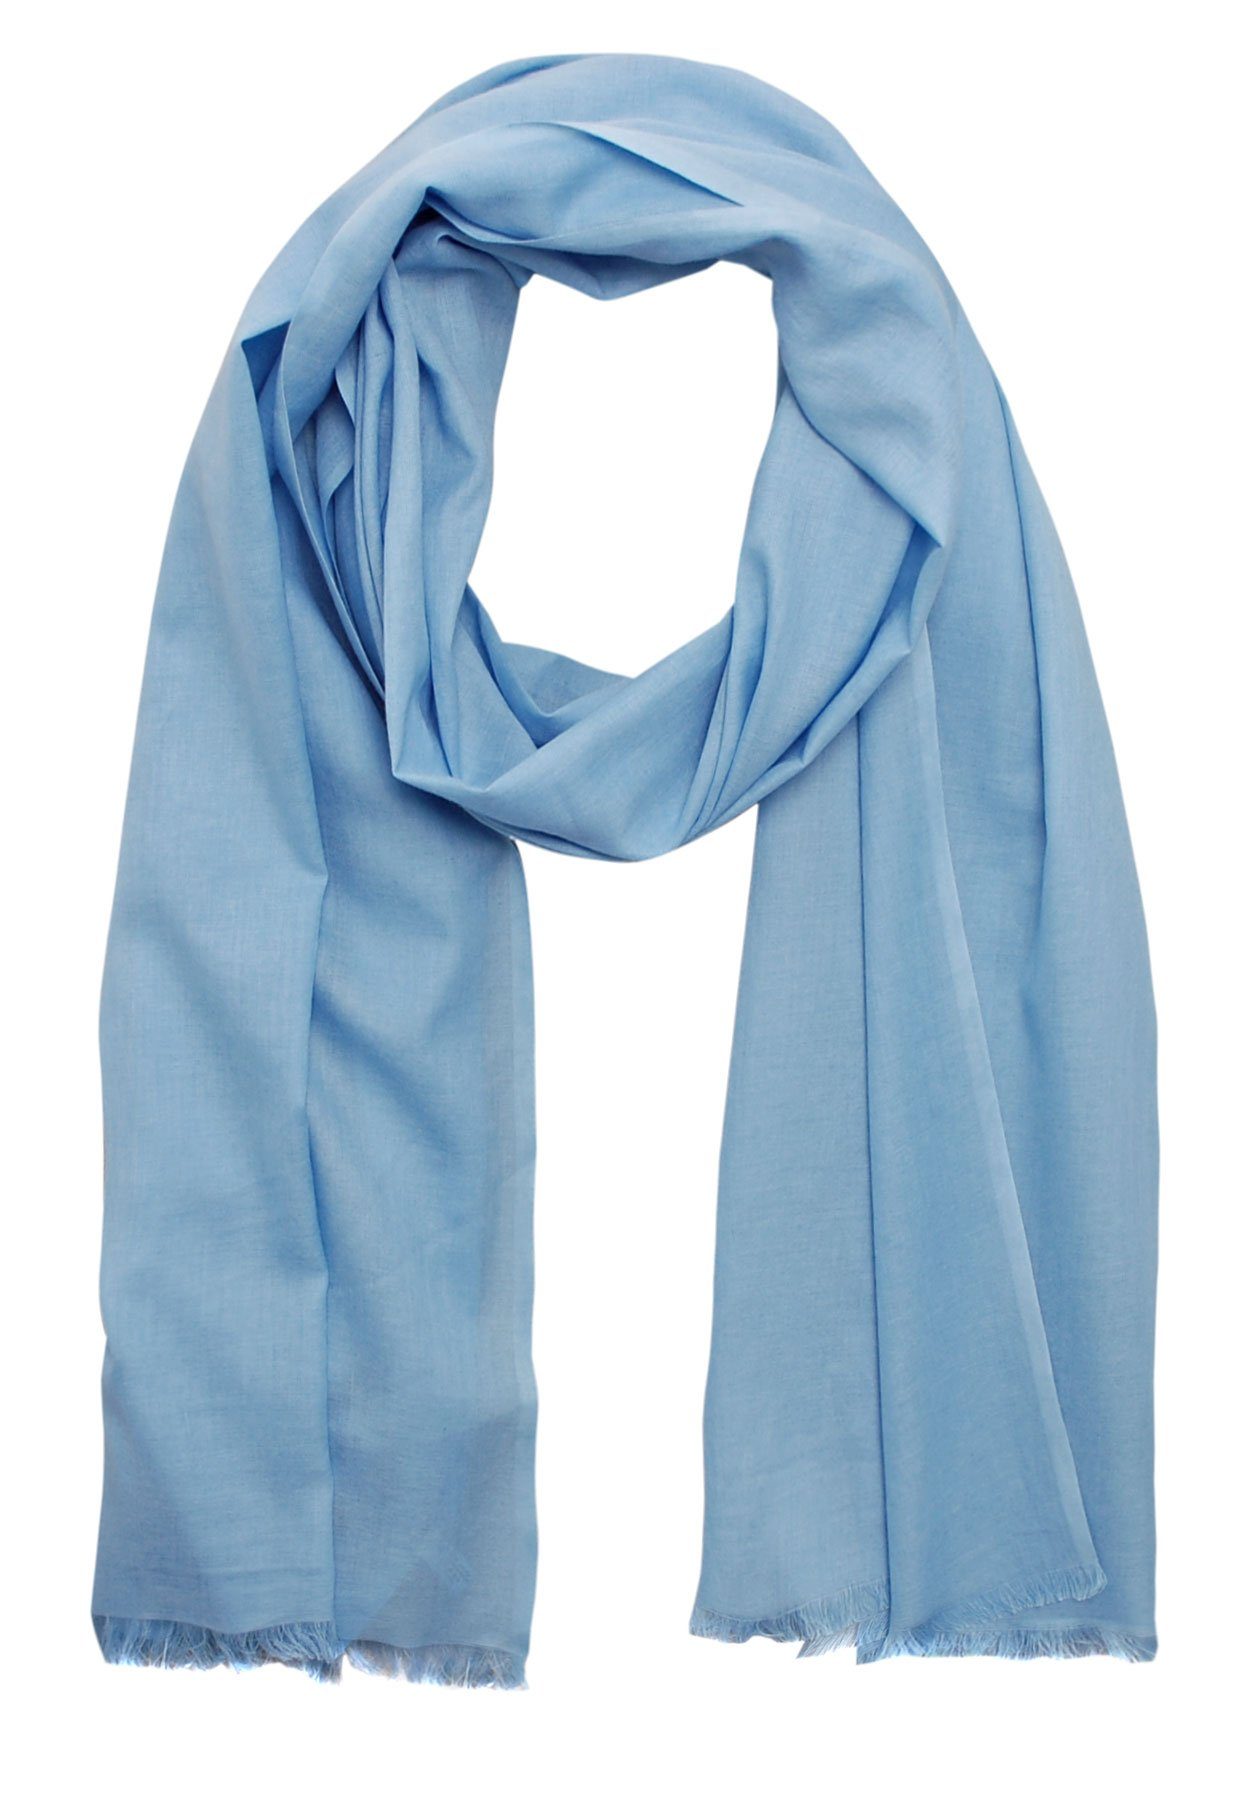 Bovari Schal Damen-Schal aus 100% gekämmter Bio-Baumwolle - handgewebt, - leicht, atmungsaktiv, dünn - Sommerschal in XL Größe 180x70 cm hell-blau